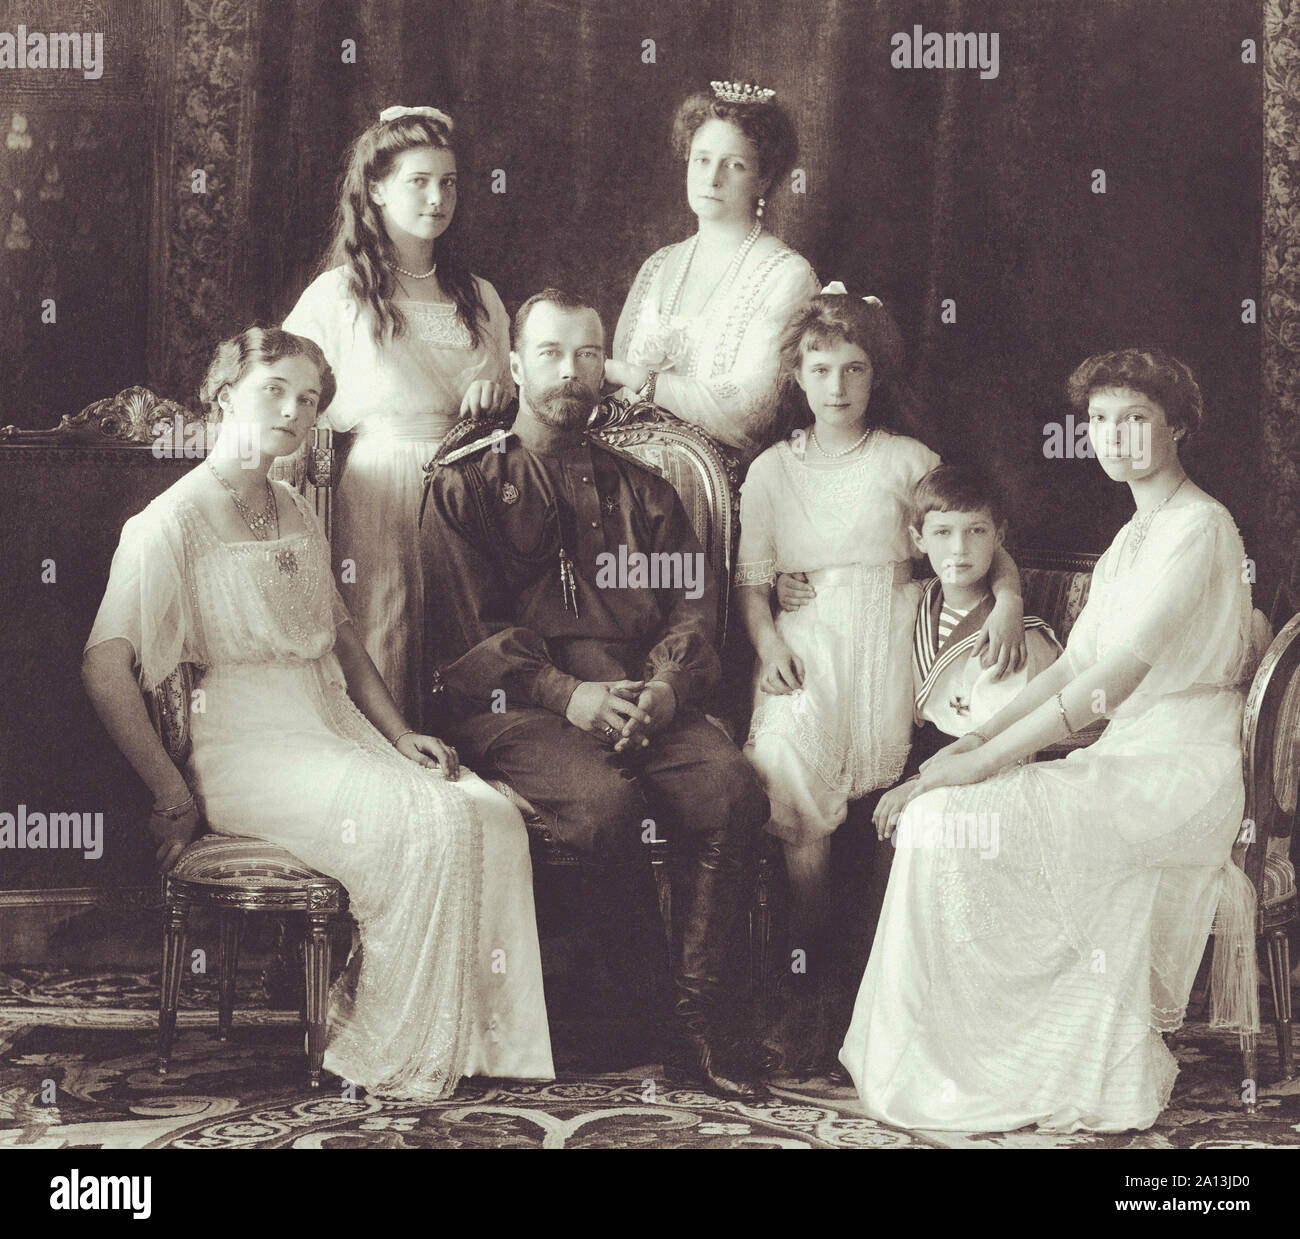 Ritratto di Romanov famiglia imperiale nel 1913. Foto Stock